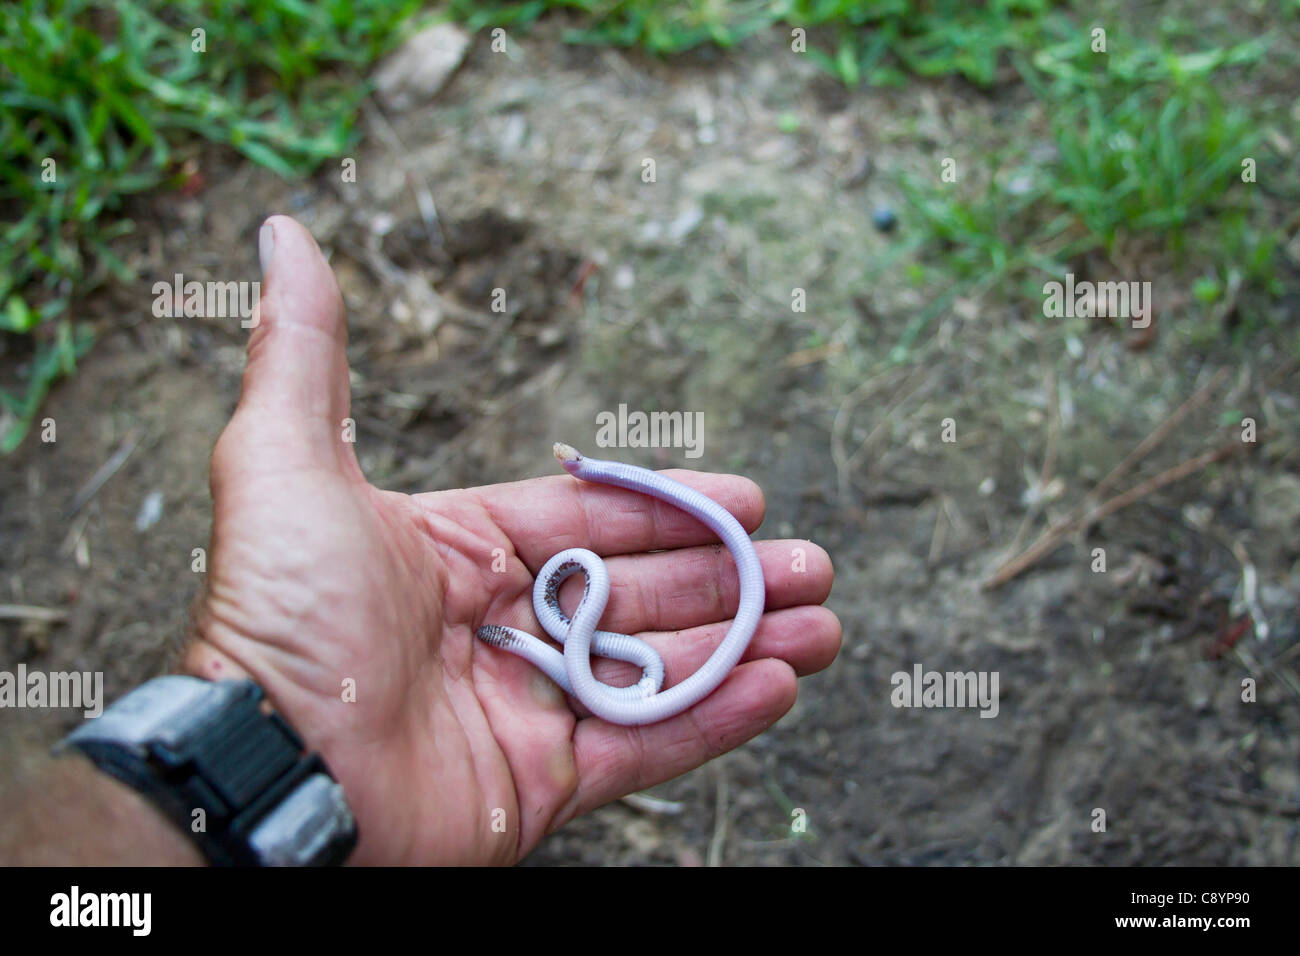 Serpent aveugle ramper dans une main les photographes. Banque D'Images